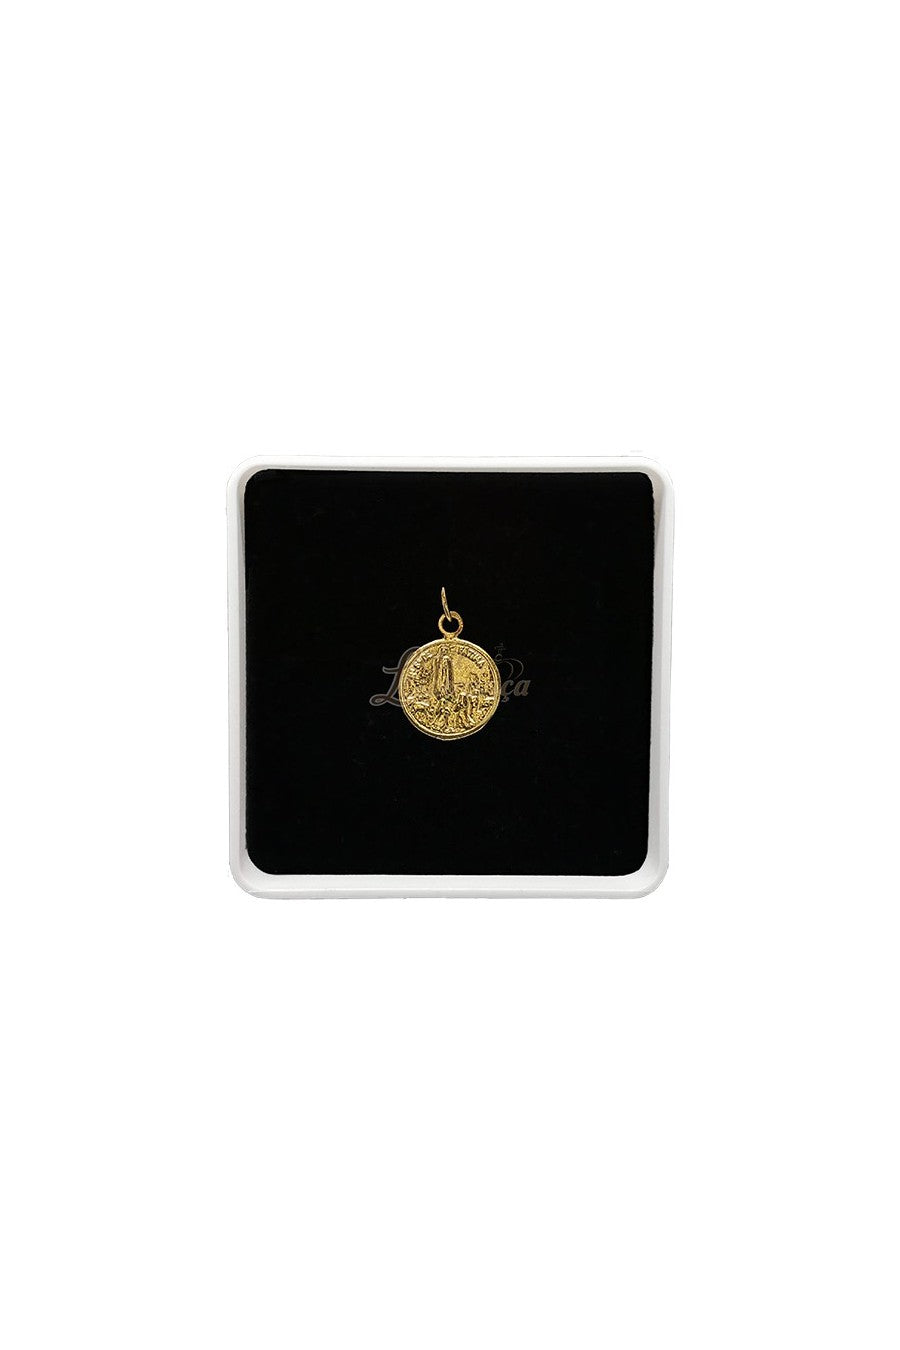 Medalla de oro - Nuestra Señora de Fátima  (Oro 19.2Kt)